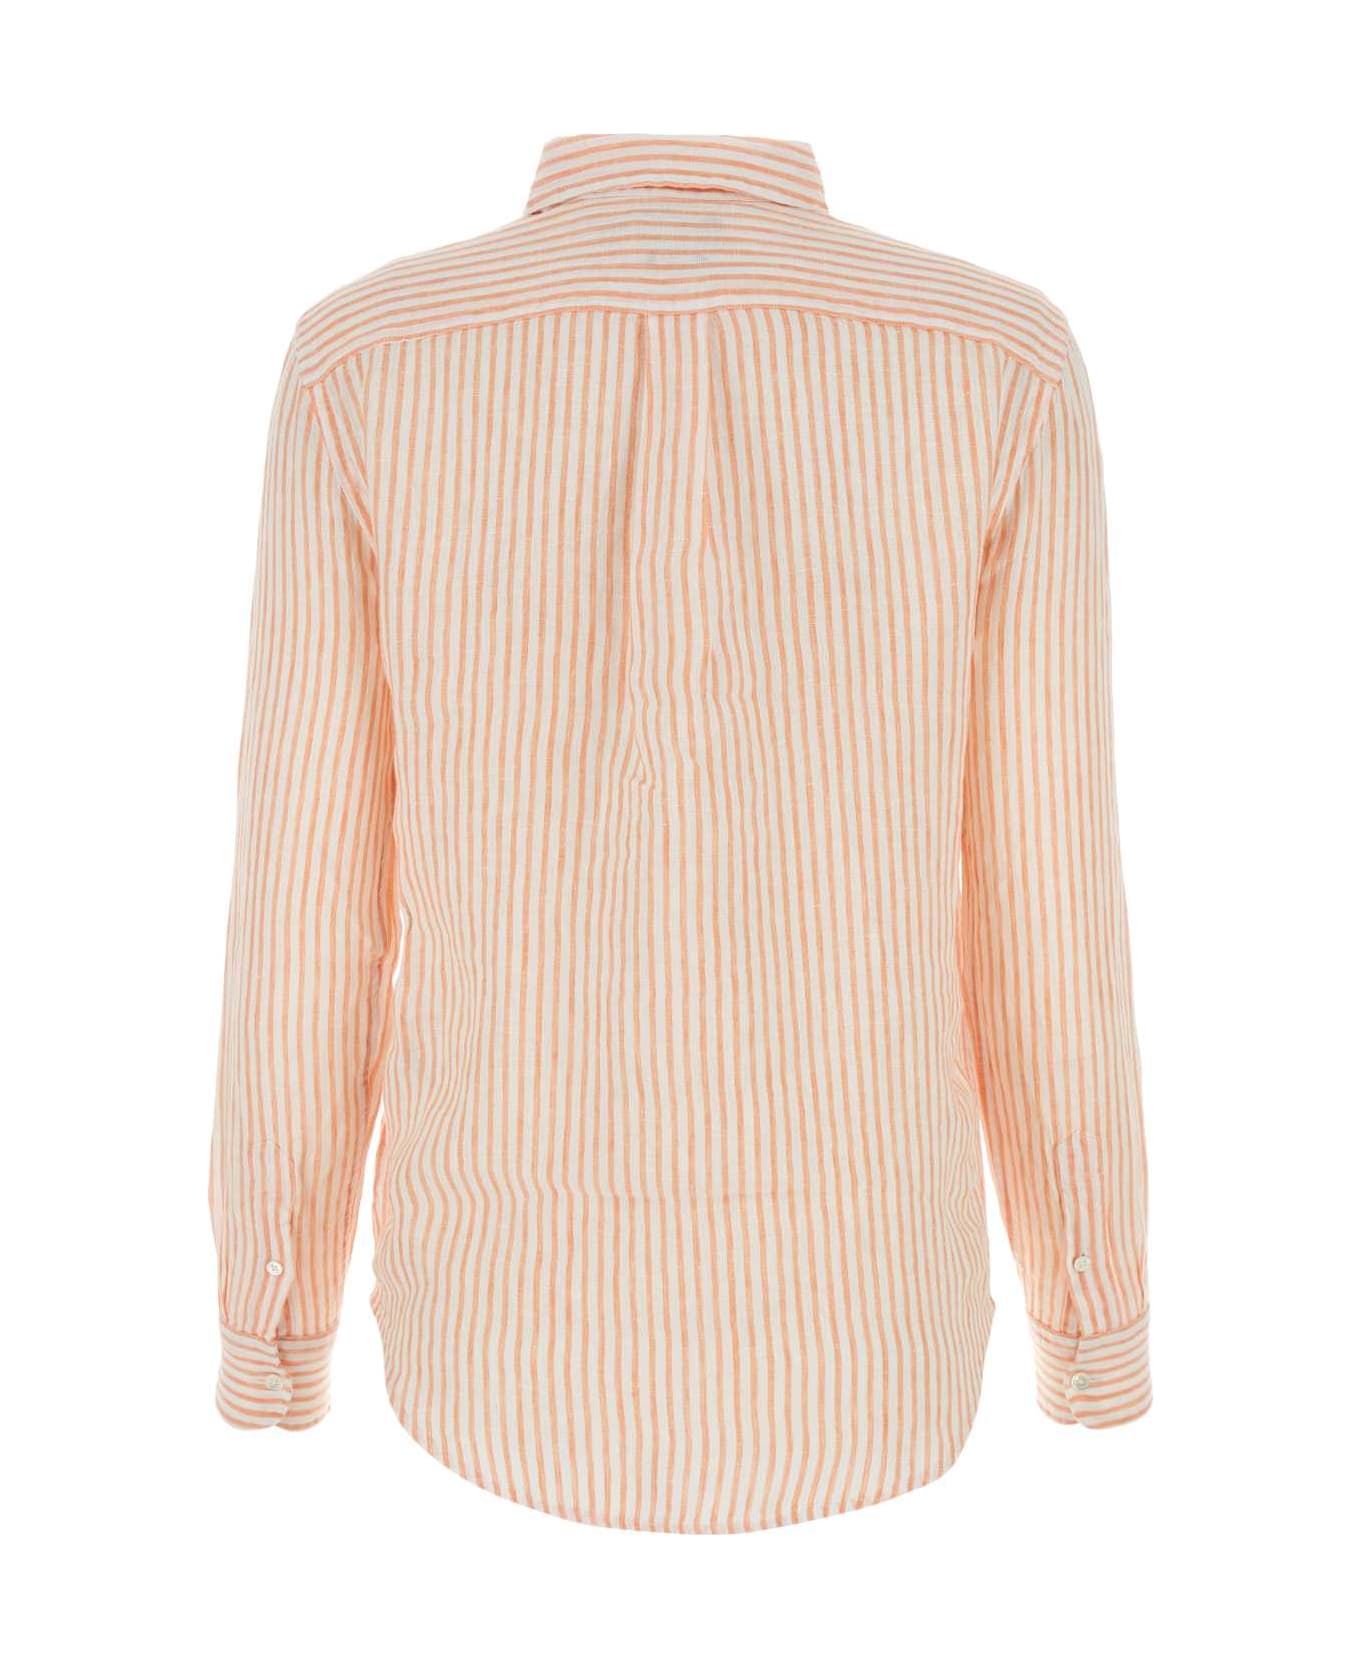 Polo Ralph Lauren Embroidered Linen Shirt - SUNFADEORANGE/WHTESTRP